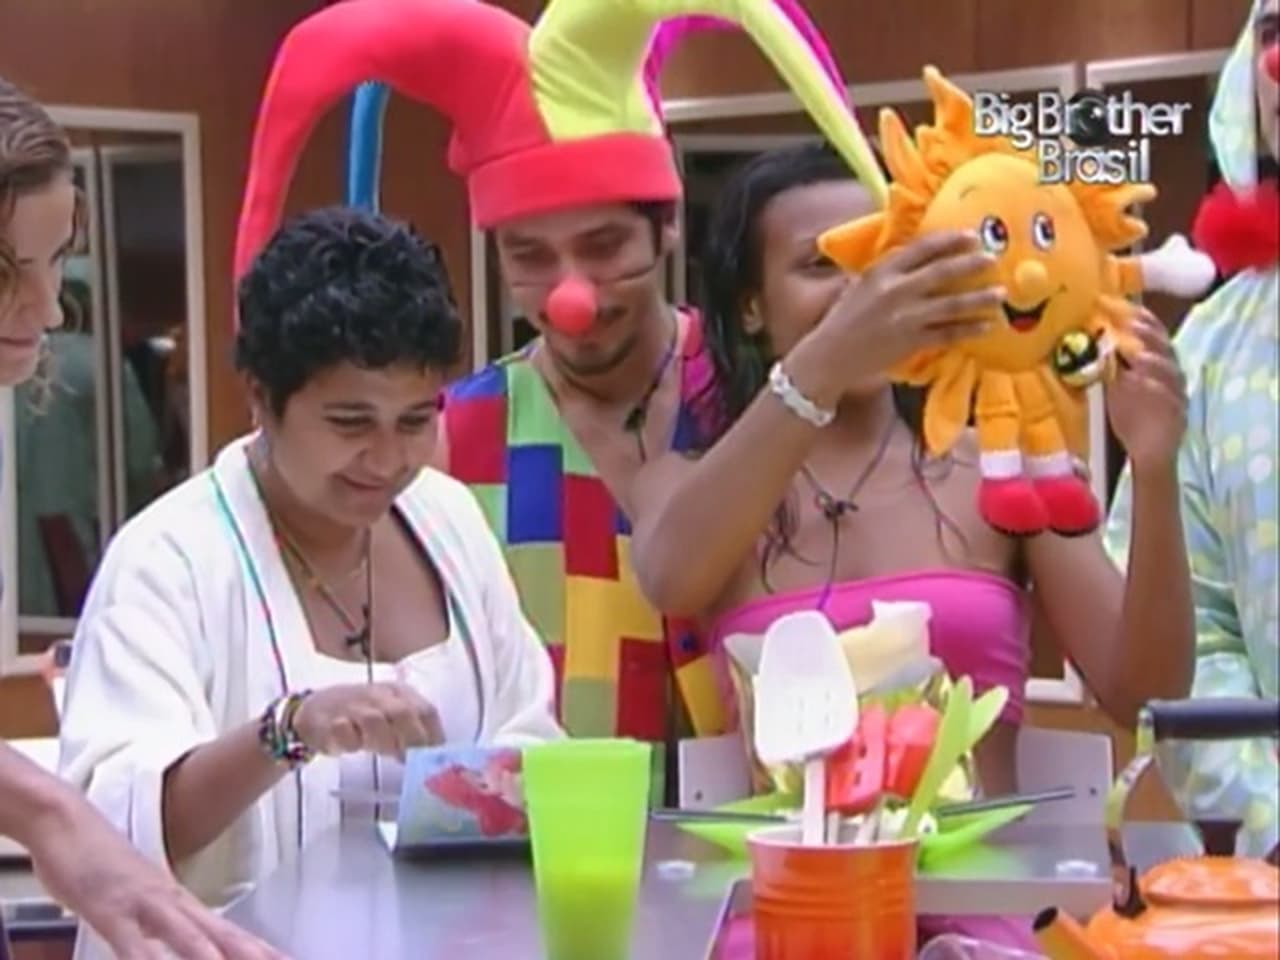 Big Brother Brasil - Season 4 Episode 49 : Episode 49